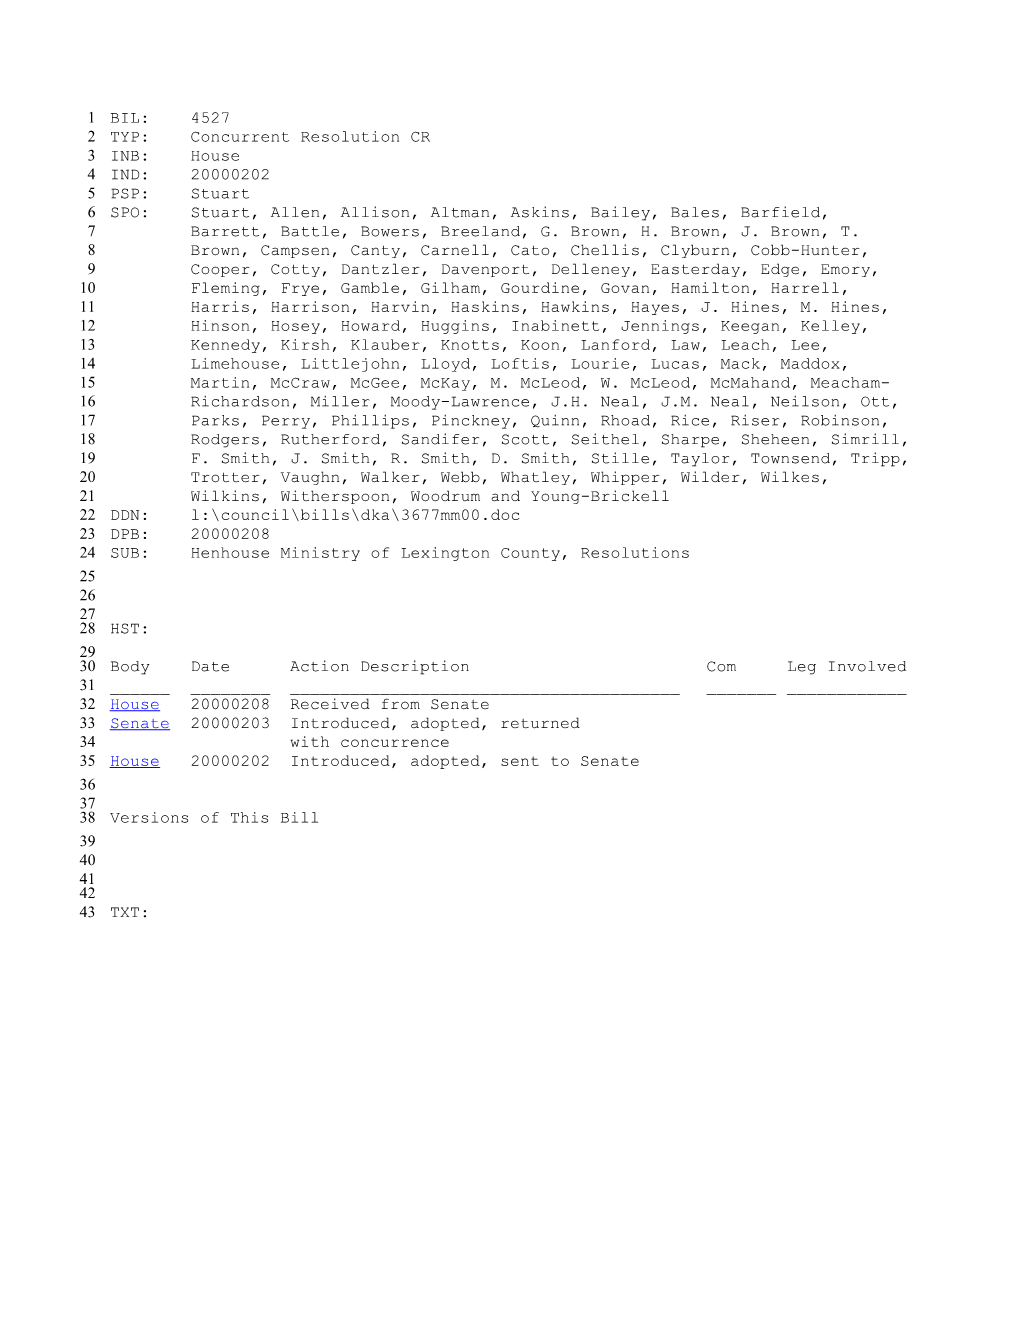 1999-2000 Bill 4527: Henhouse Ministry of Lexington County, Resolutions - South Carolina